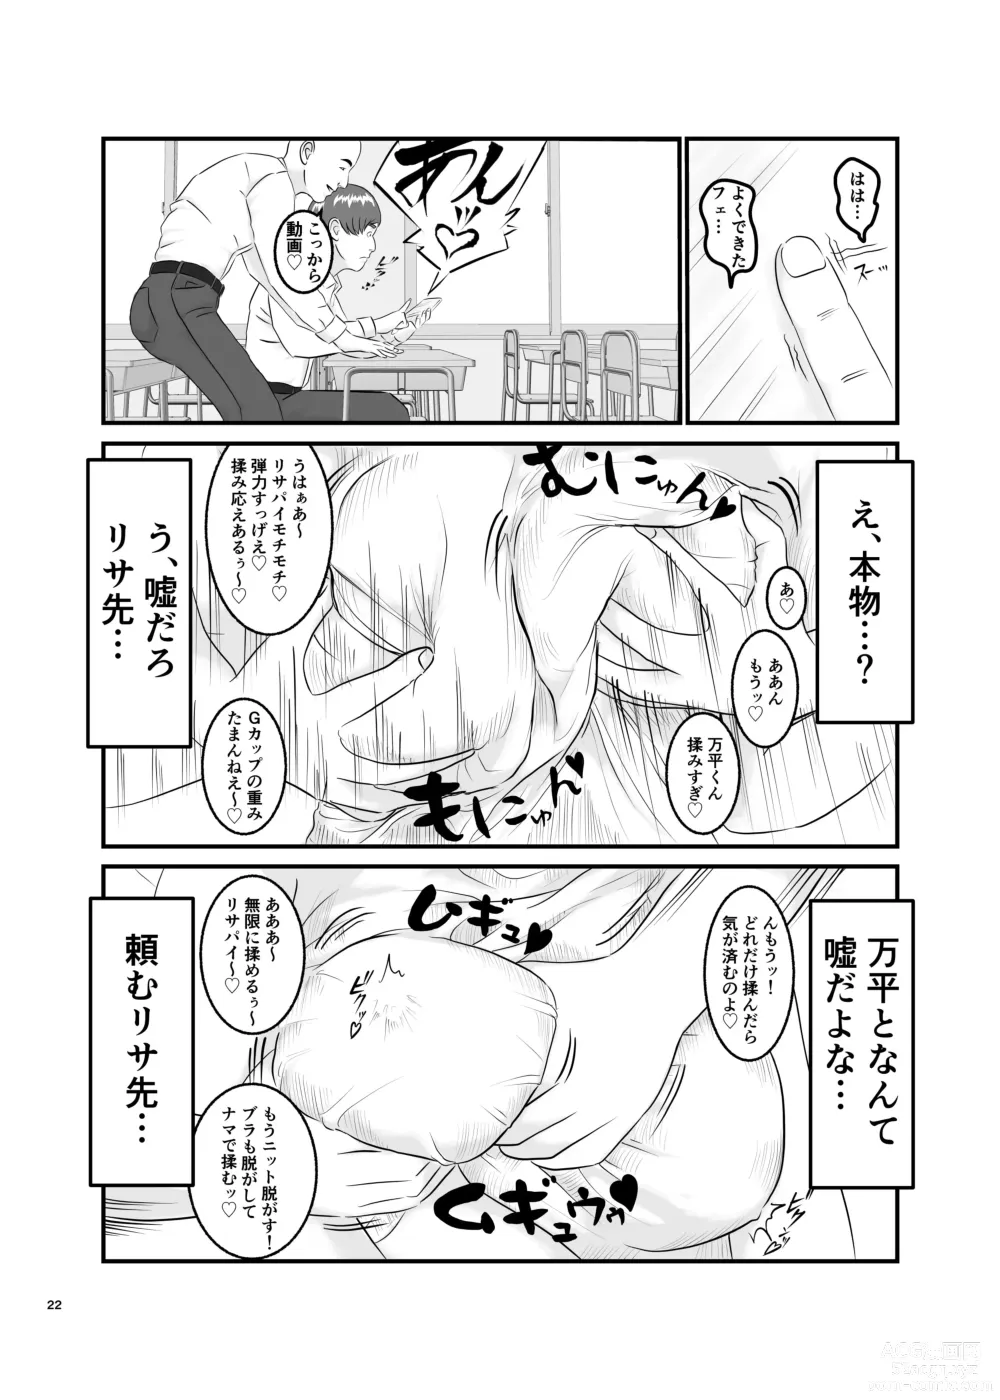 Page 22 of doujinshi Akogare no Hito wa Mou Owari!